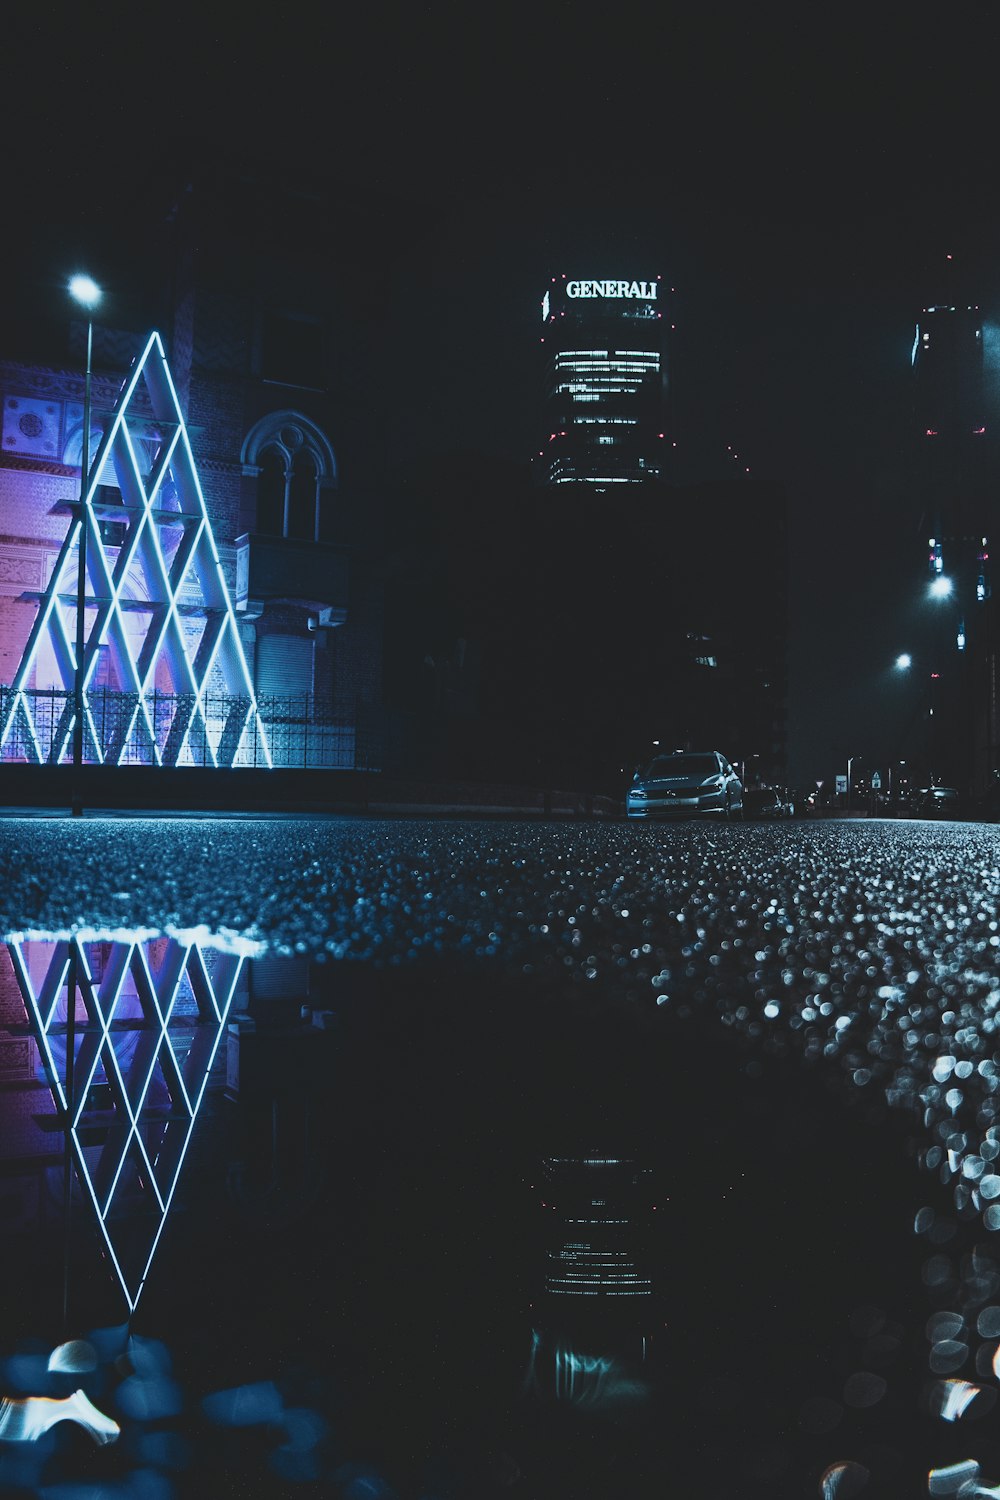 Una ciudad de noche con un reflejo de un edificio en el agua